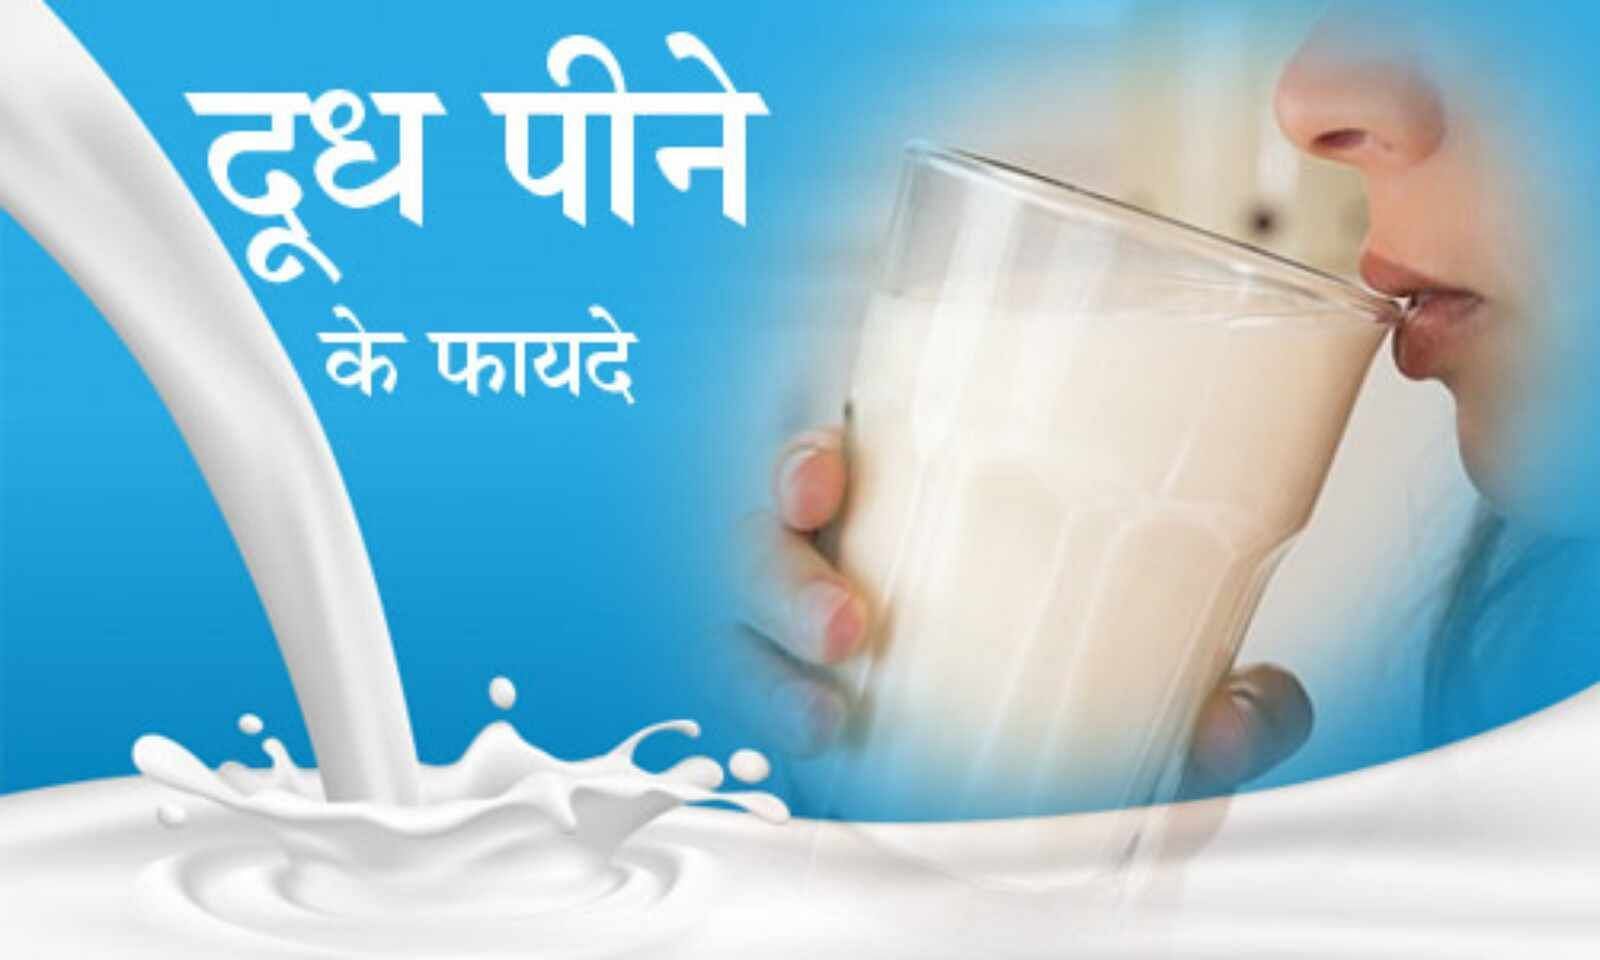 दूध के फायदे (फोटो - hari bhoomi)